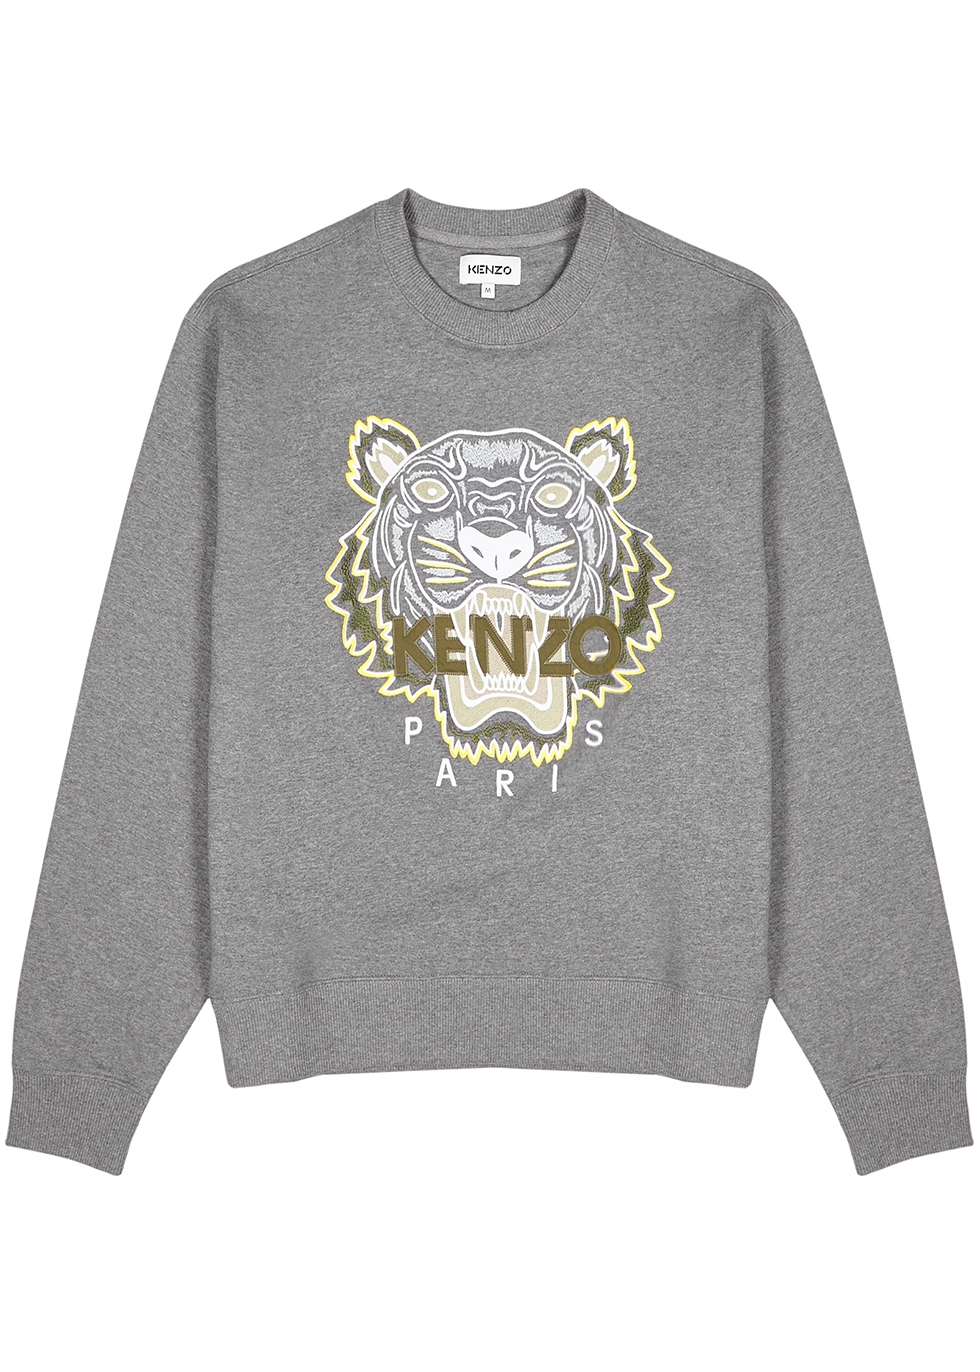 kenzo sweatshirt xxl